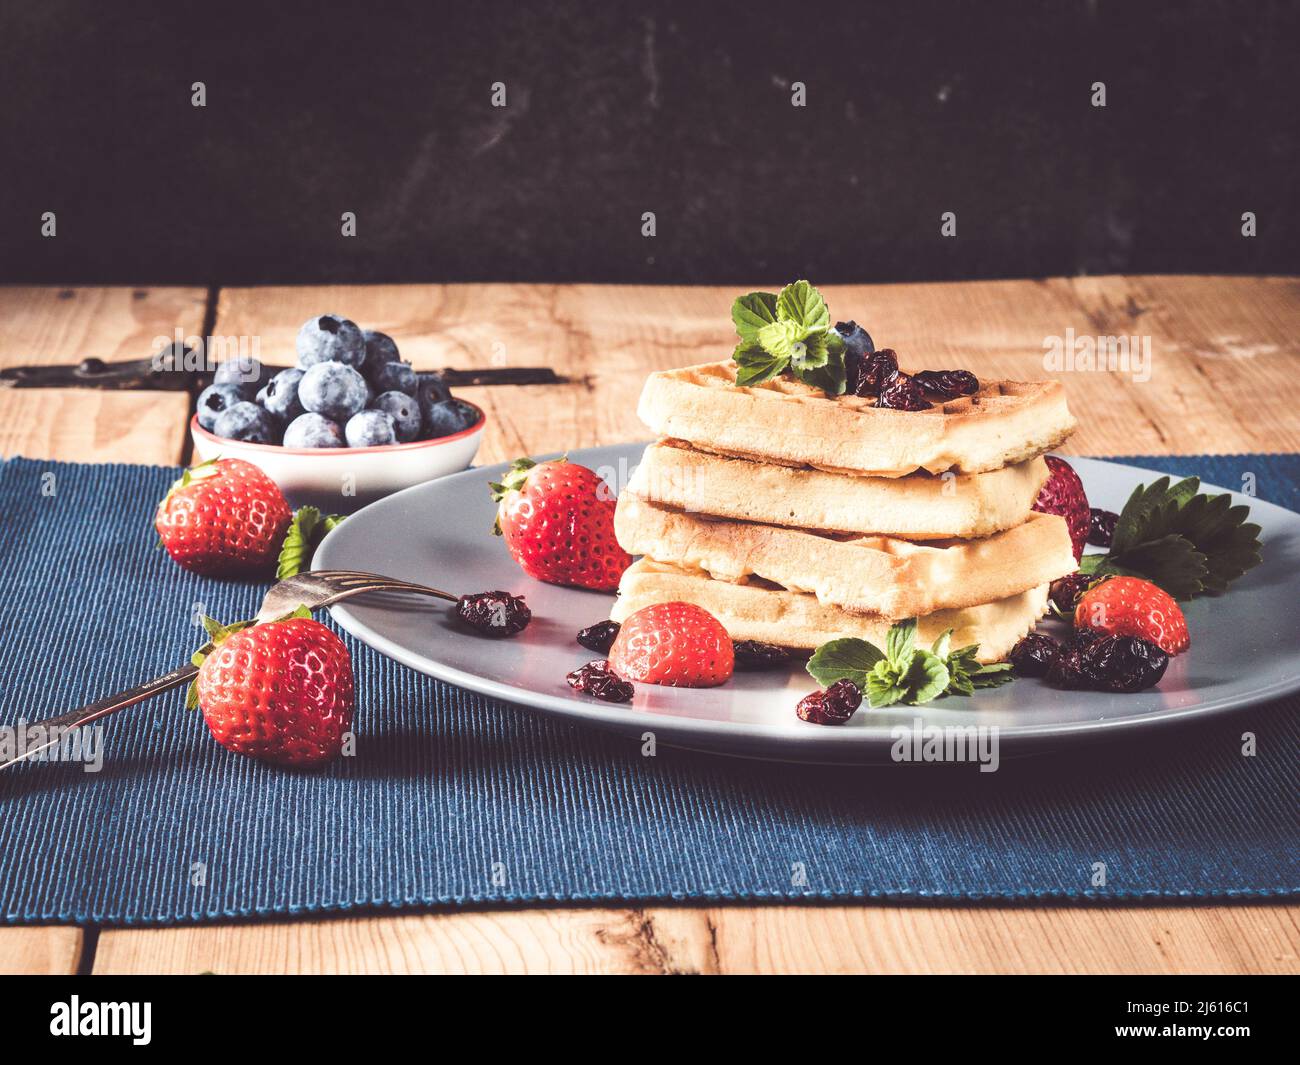 gaufre maison décorée de myrtilles, de strwaberries, de canneberges et de menthe; table rustique en bois avec napperons et bols Banque D'Images